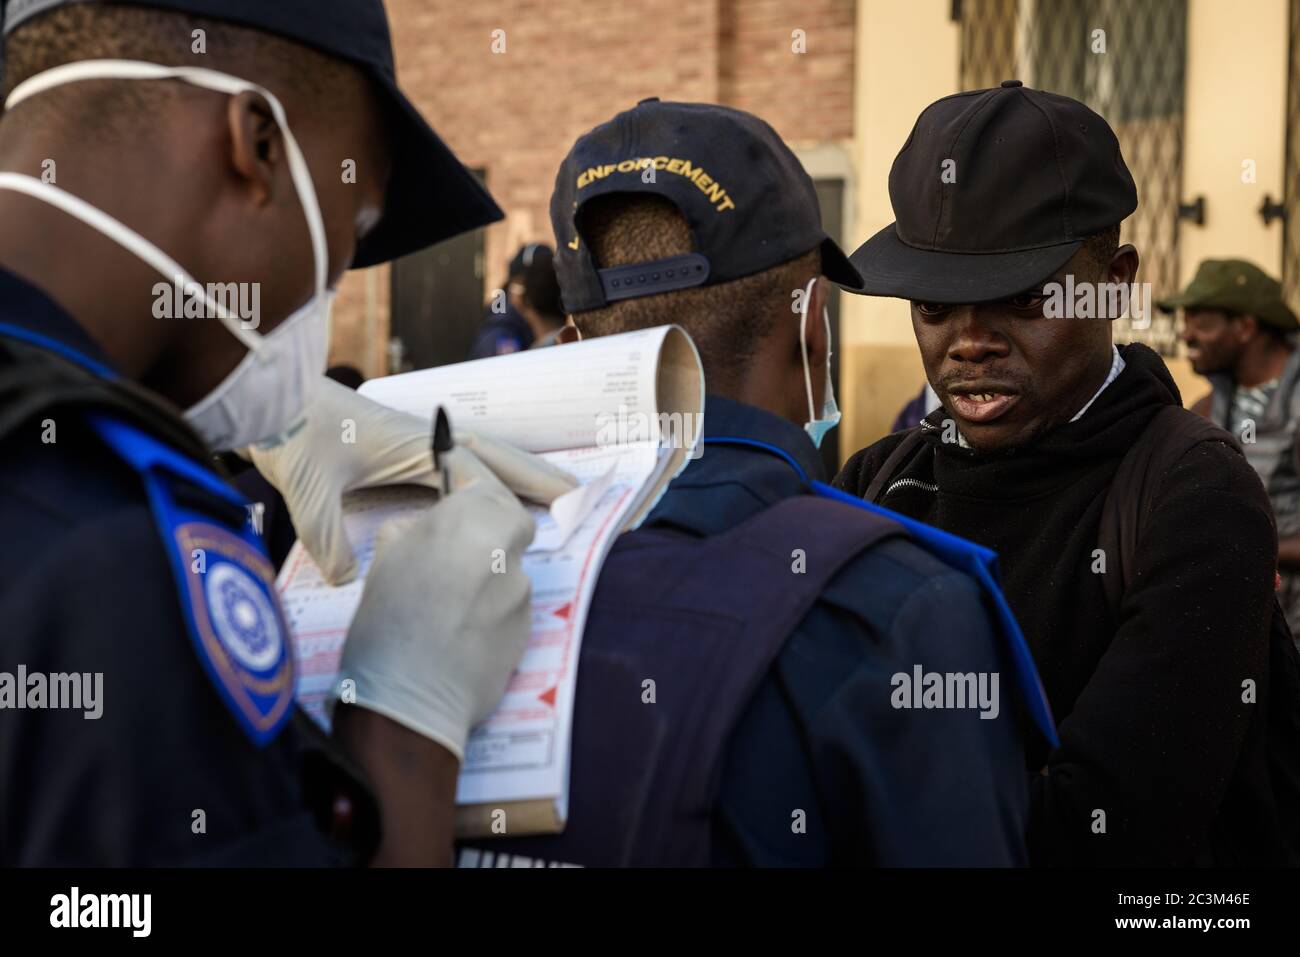 La police sud-africaine inflige des amendes aux réfugiés nationaux étrangers africains sans abri pour avoir violé les règlements d'application de la ville du Cap lors de l'épidémie de coronavirus Banque D'Images